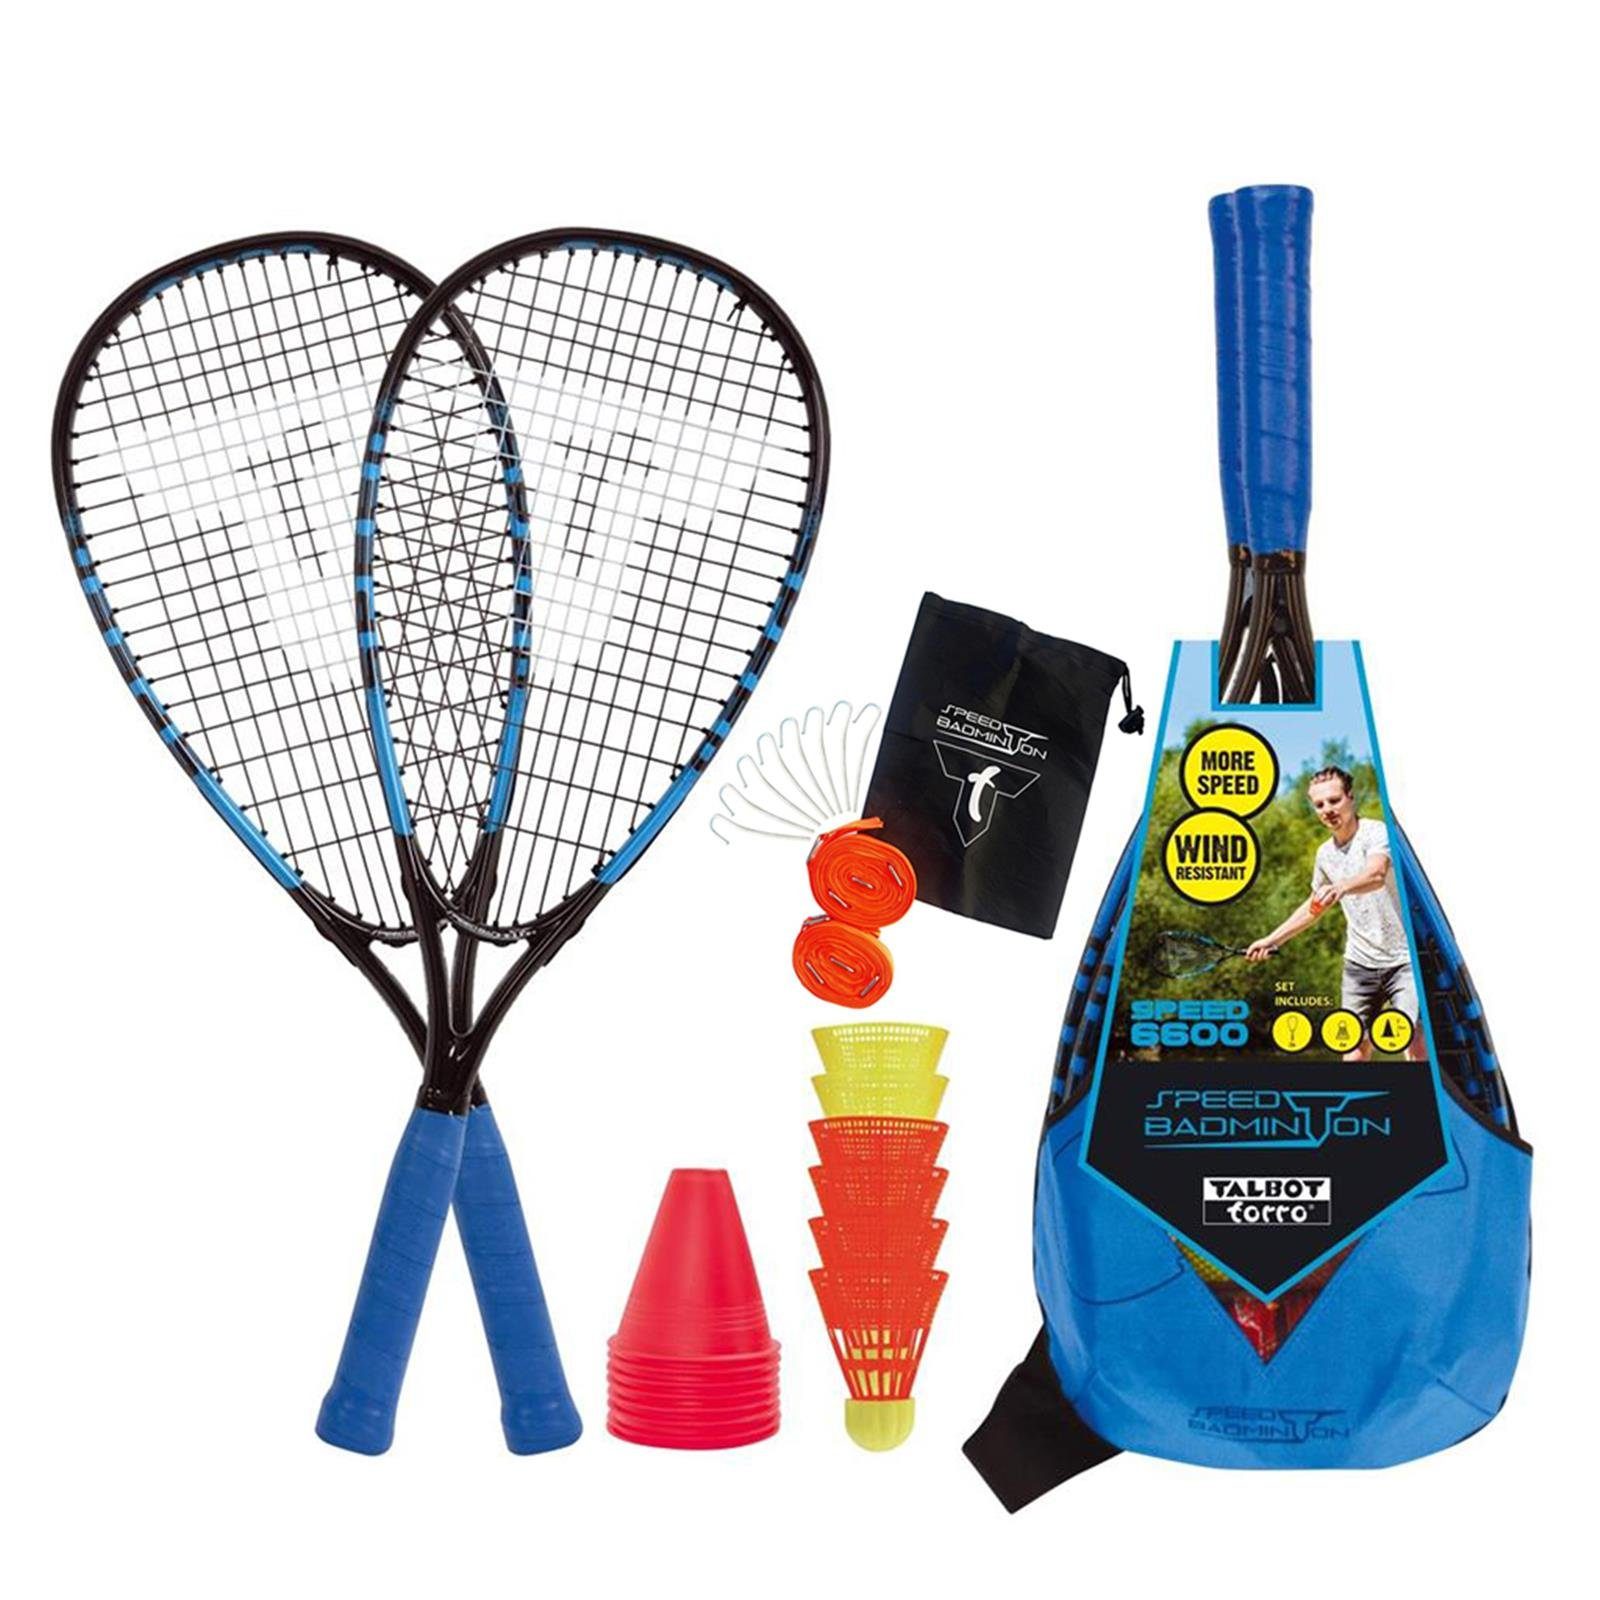 Speed-Badminton 6600 Speed Speed-Badmintonschläger Court Set + Line Talbot-Torro